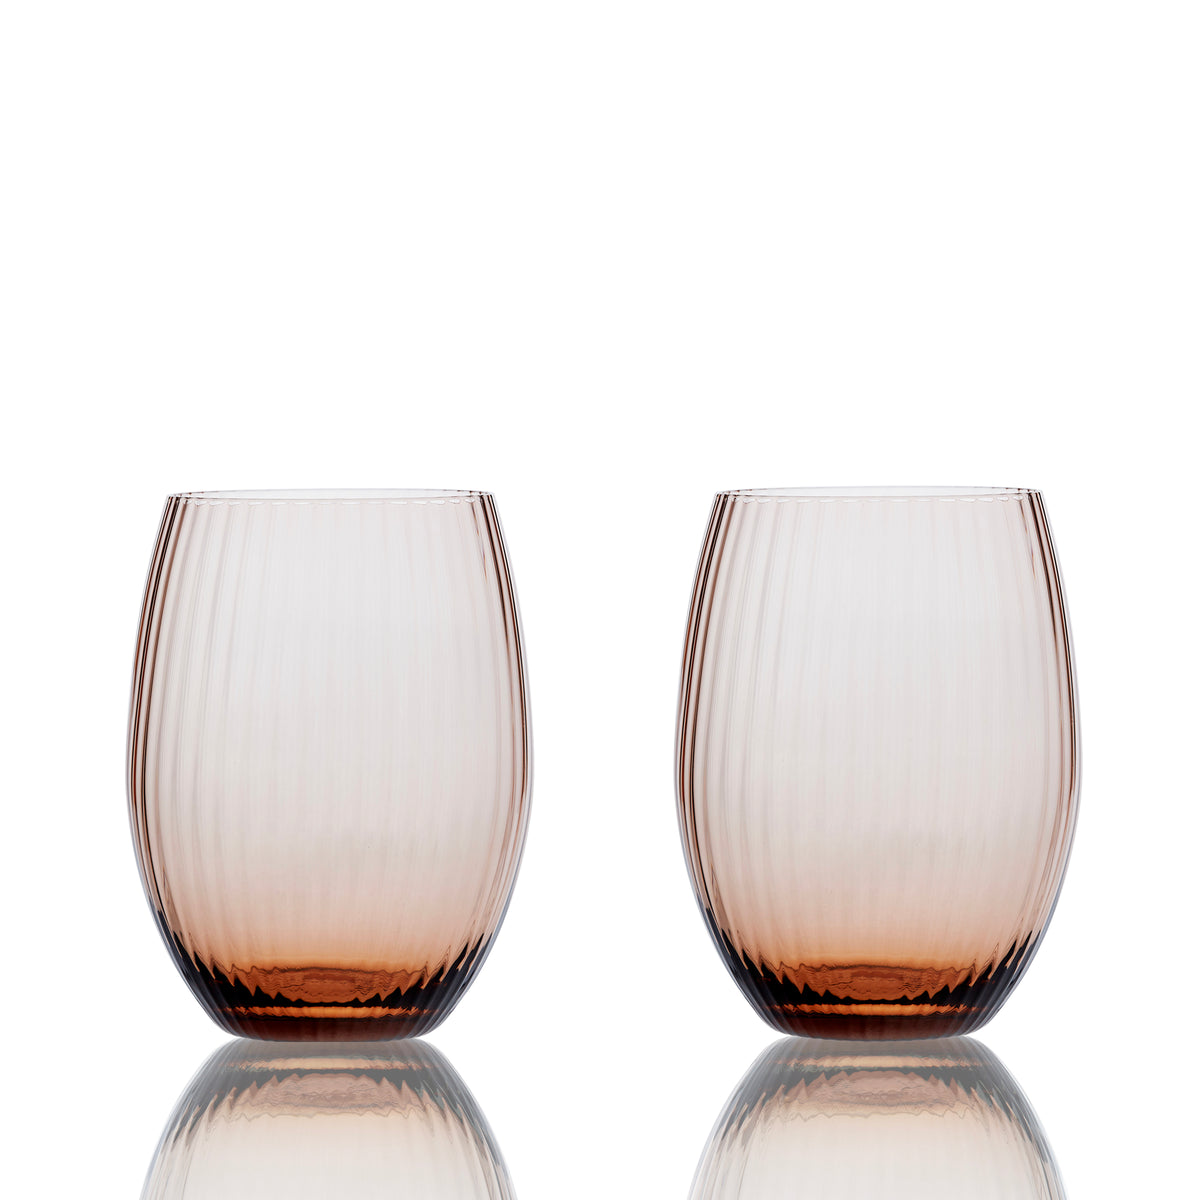 Quinn Optic Tumbler or Stemless Wine Glasses in Amber from Caskata